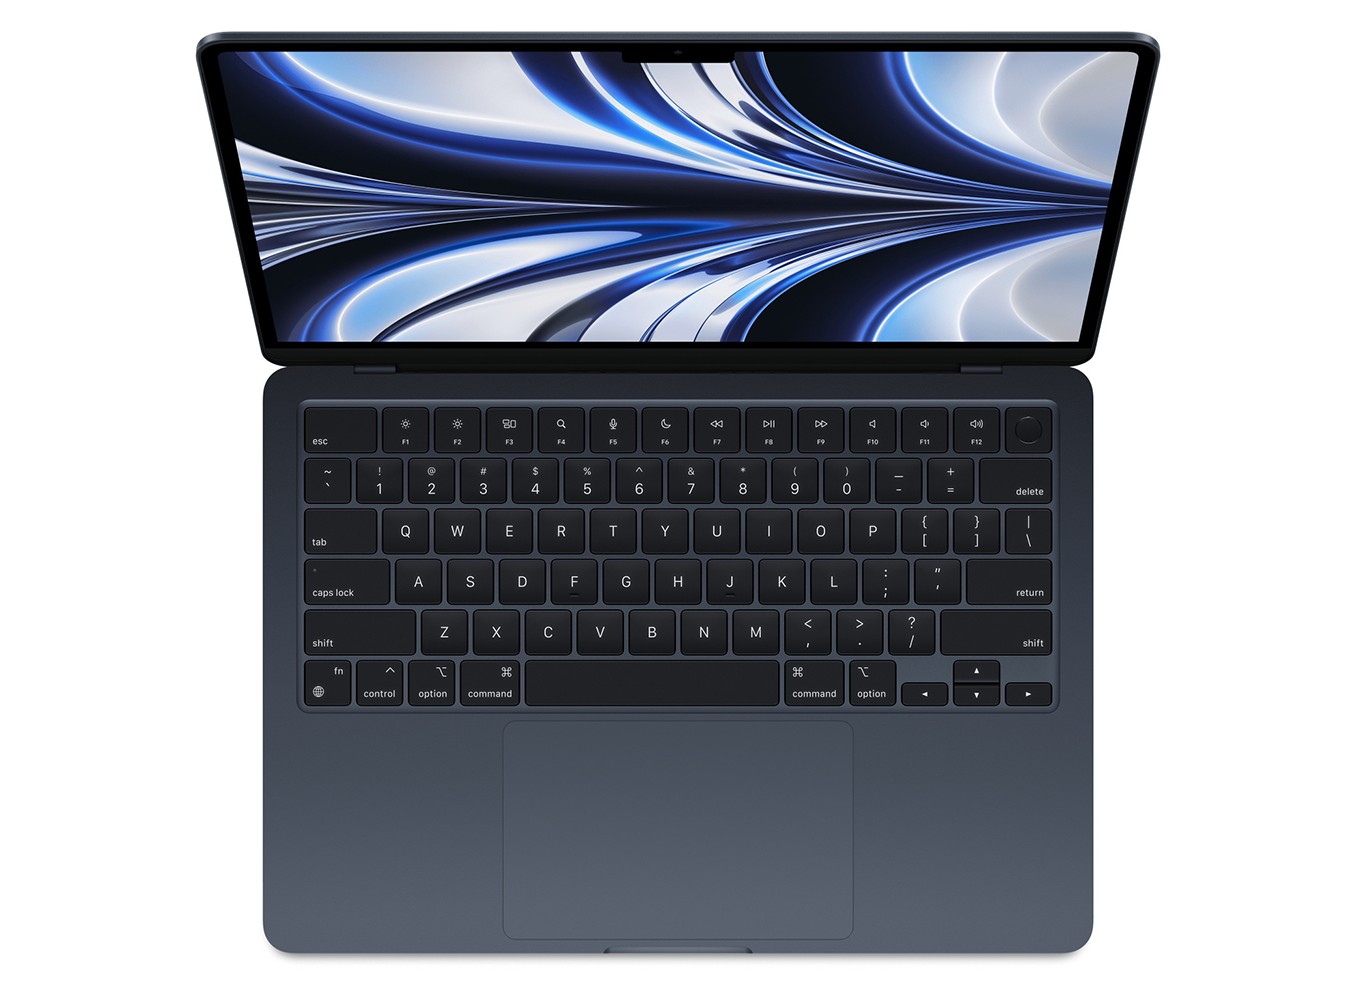 MacBook Air M2 đang là tâm điểm của giới công nghệ, và bạn đang mong muốn hiểu rõ hơn về chiếc laptop này? Hãy tham gia cùng chúng tôi để khám phá những tính năng ấn tượng trên chiếc MacBook Air M2, đem lại cho bạn một trải nghiệm tuyệt vời.